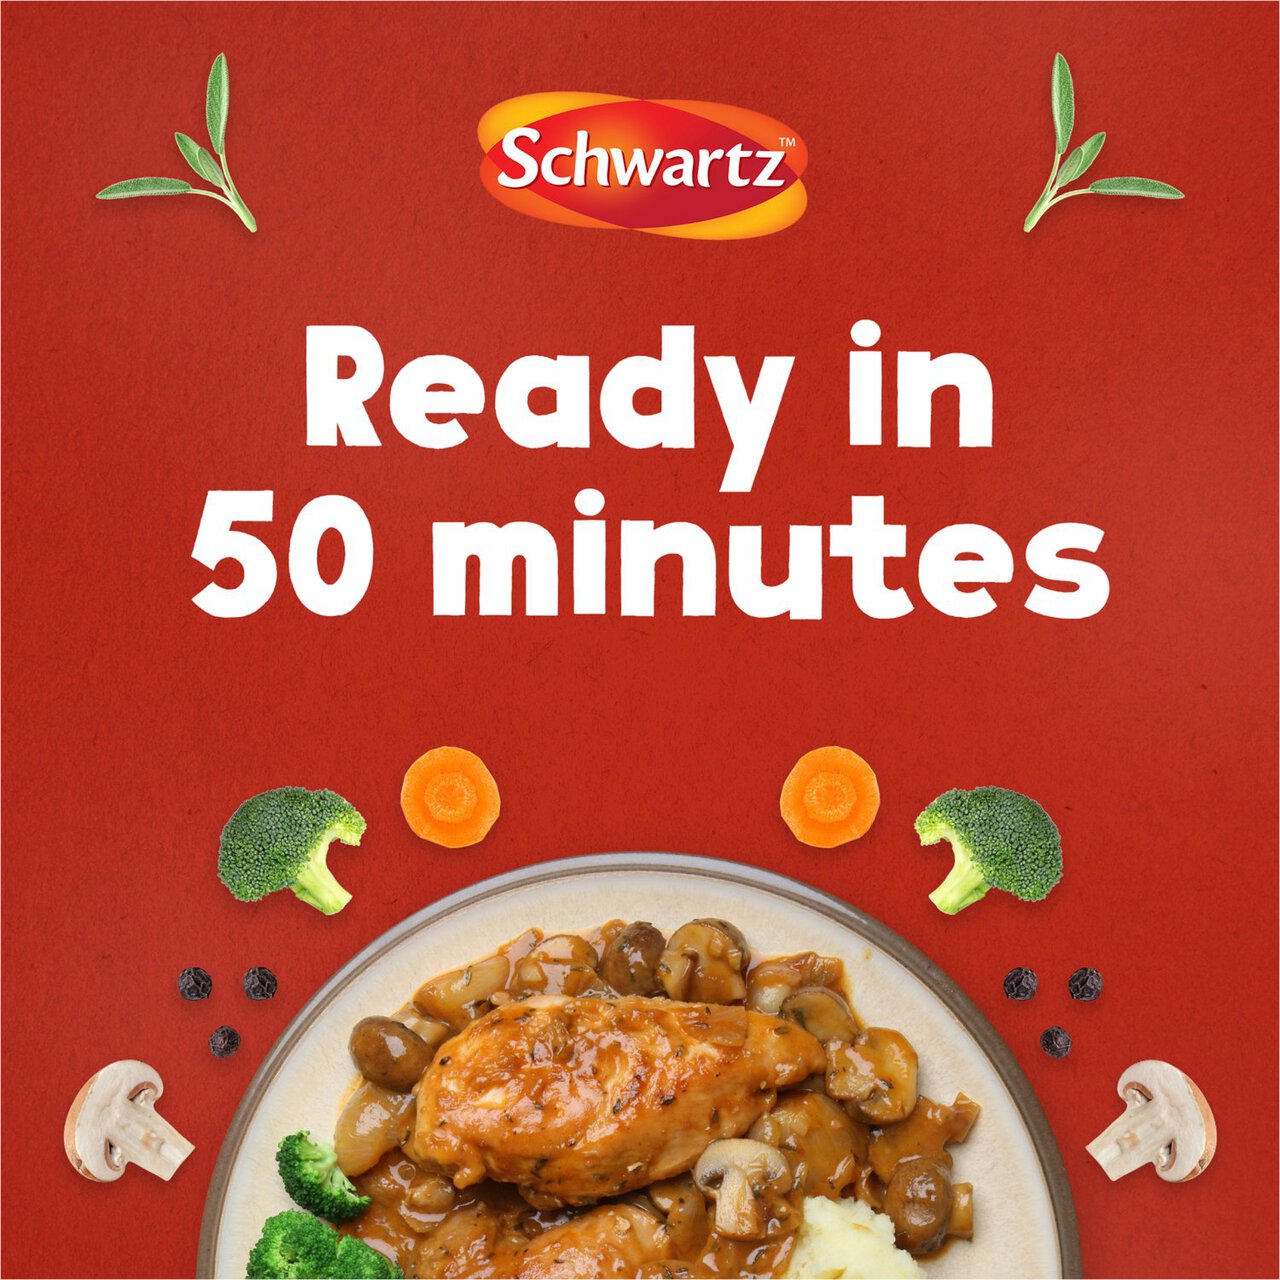 Schwartz Authentic Chicken Chasseur Mix 40g